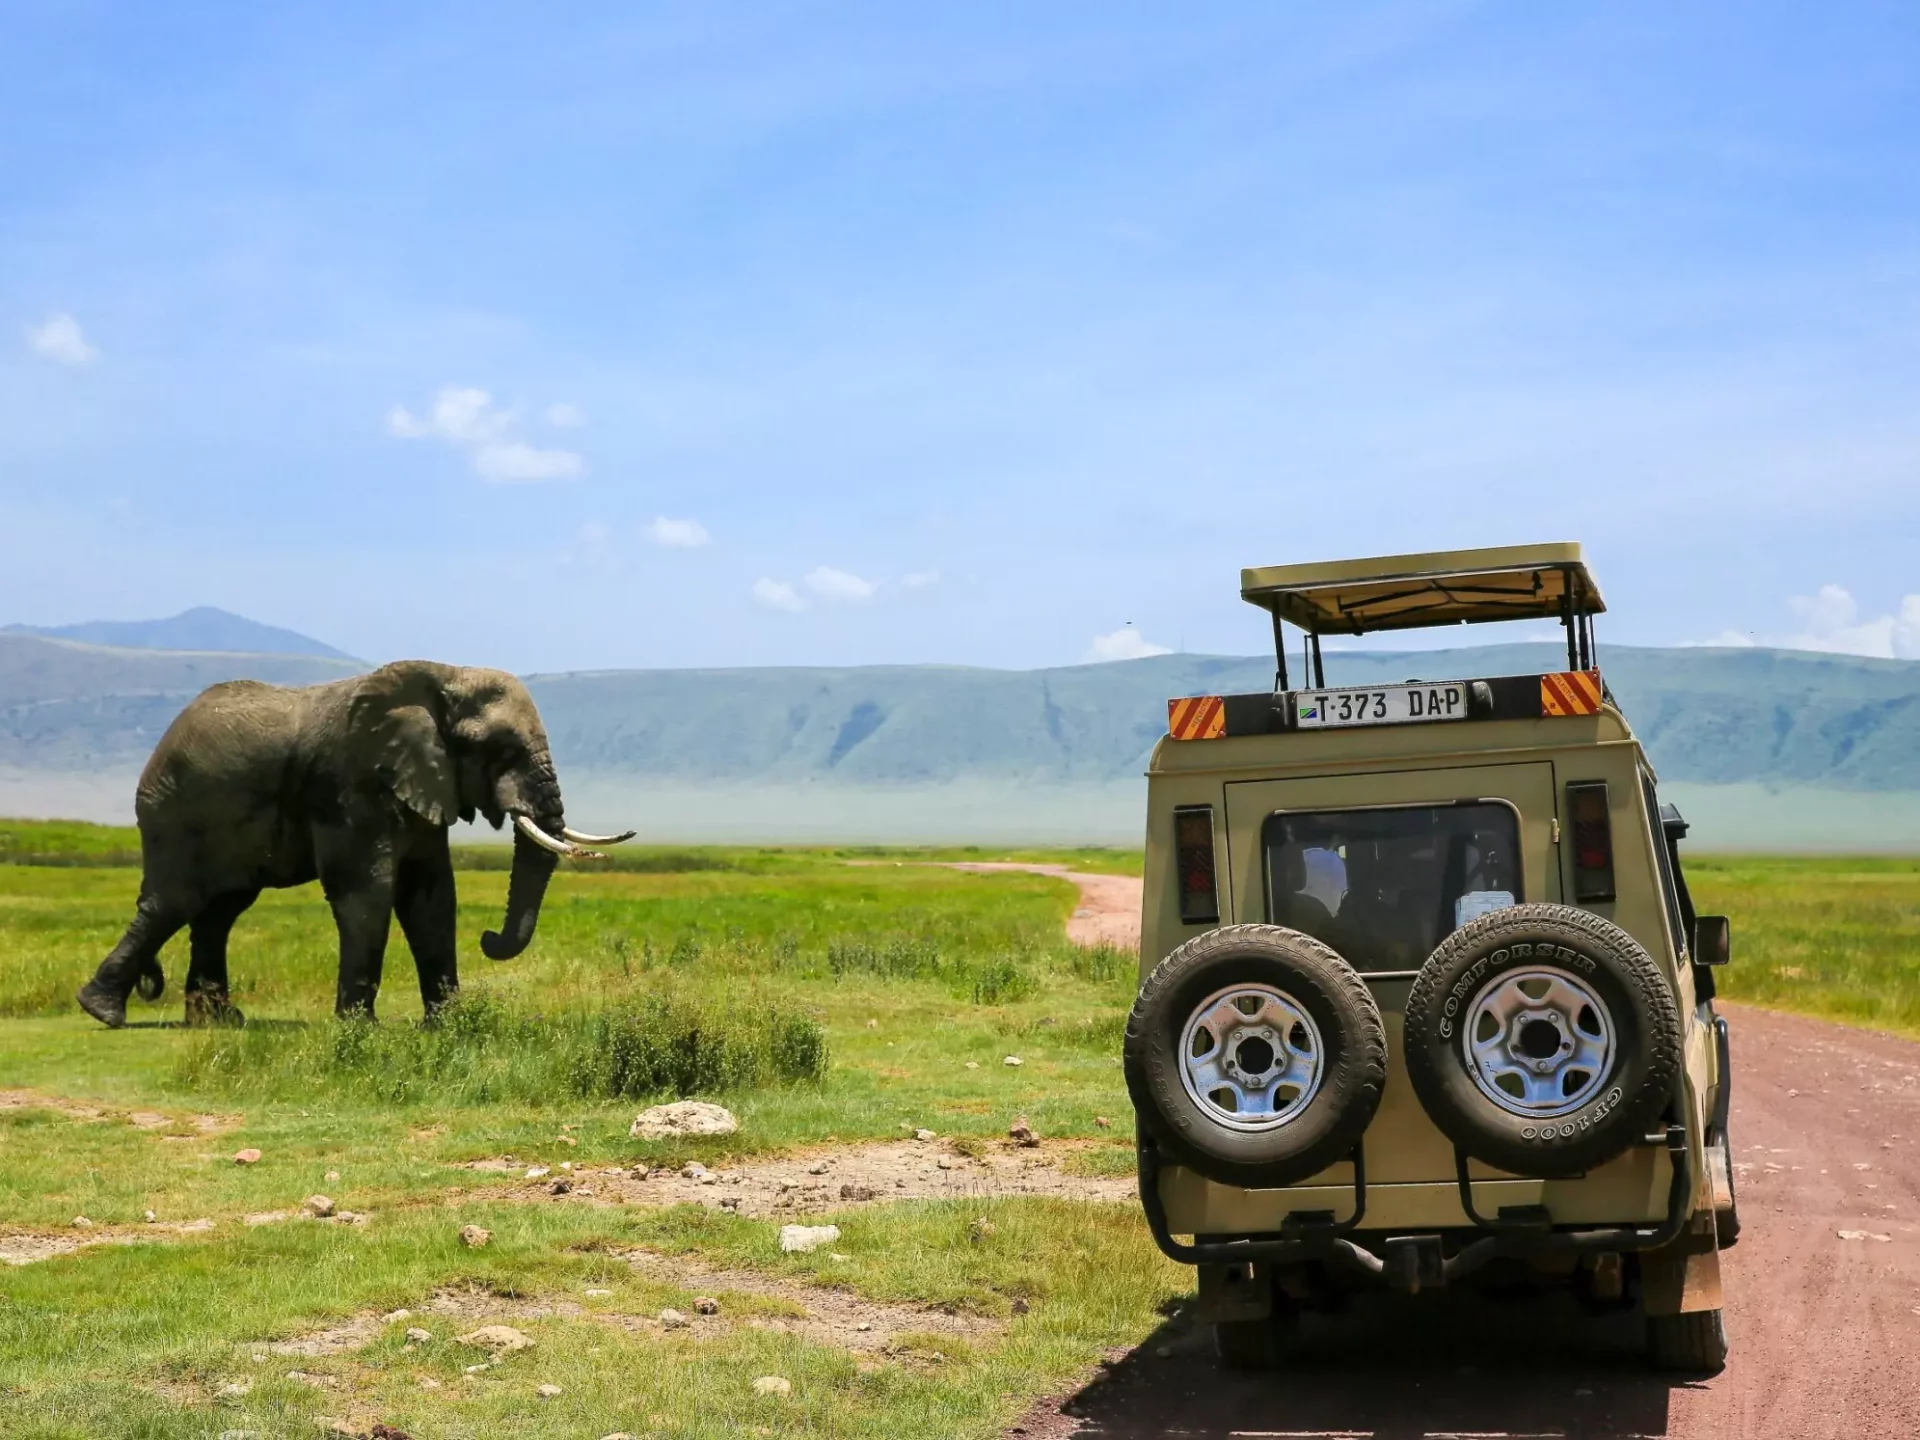 Elefant im Ngorongoro-Krater